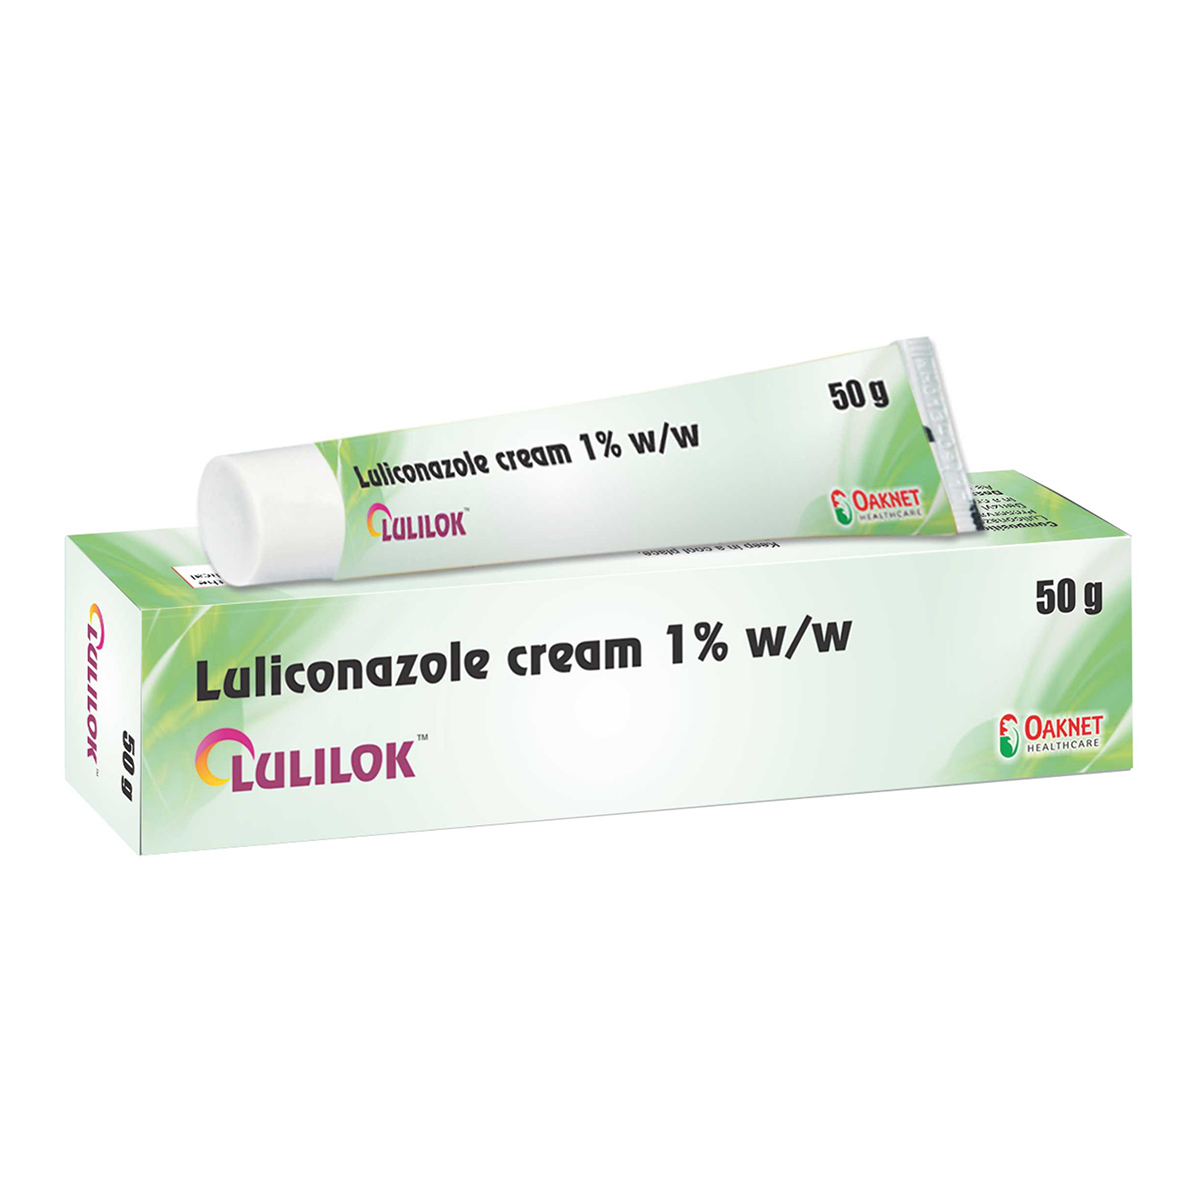 Lulilok-50g-pack